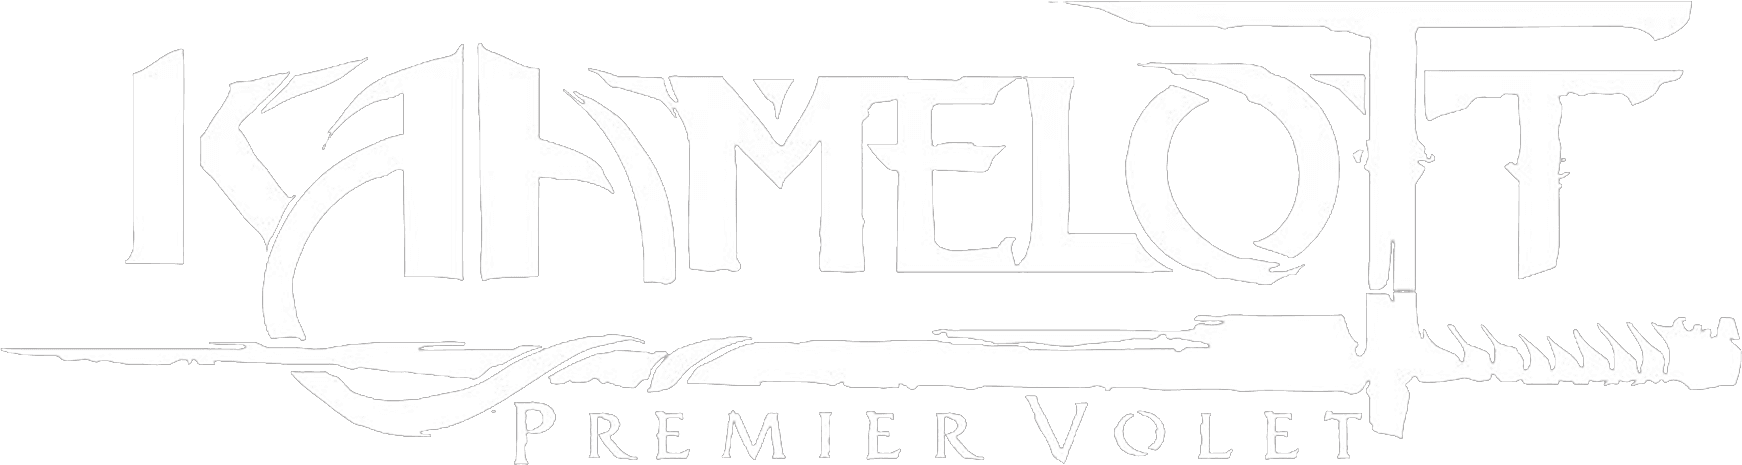 Kaamelott: The First Chapter logo